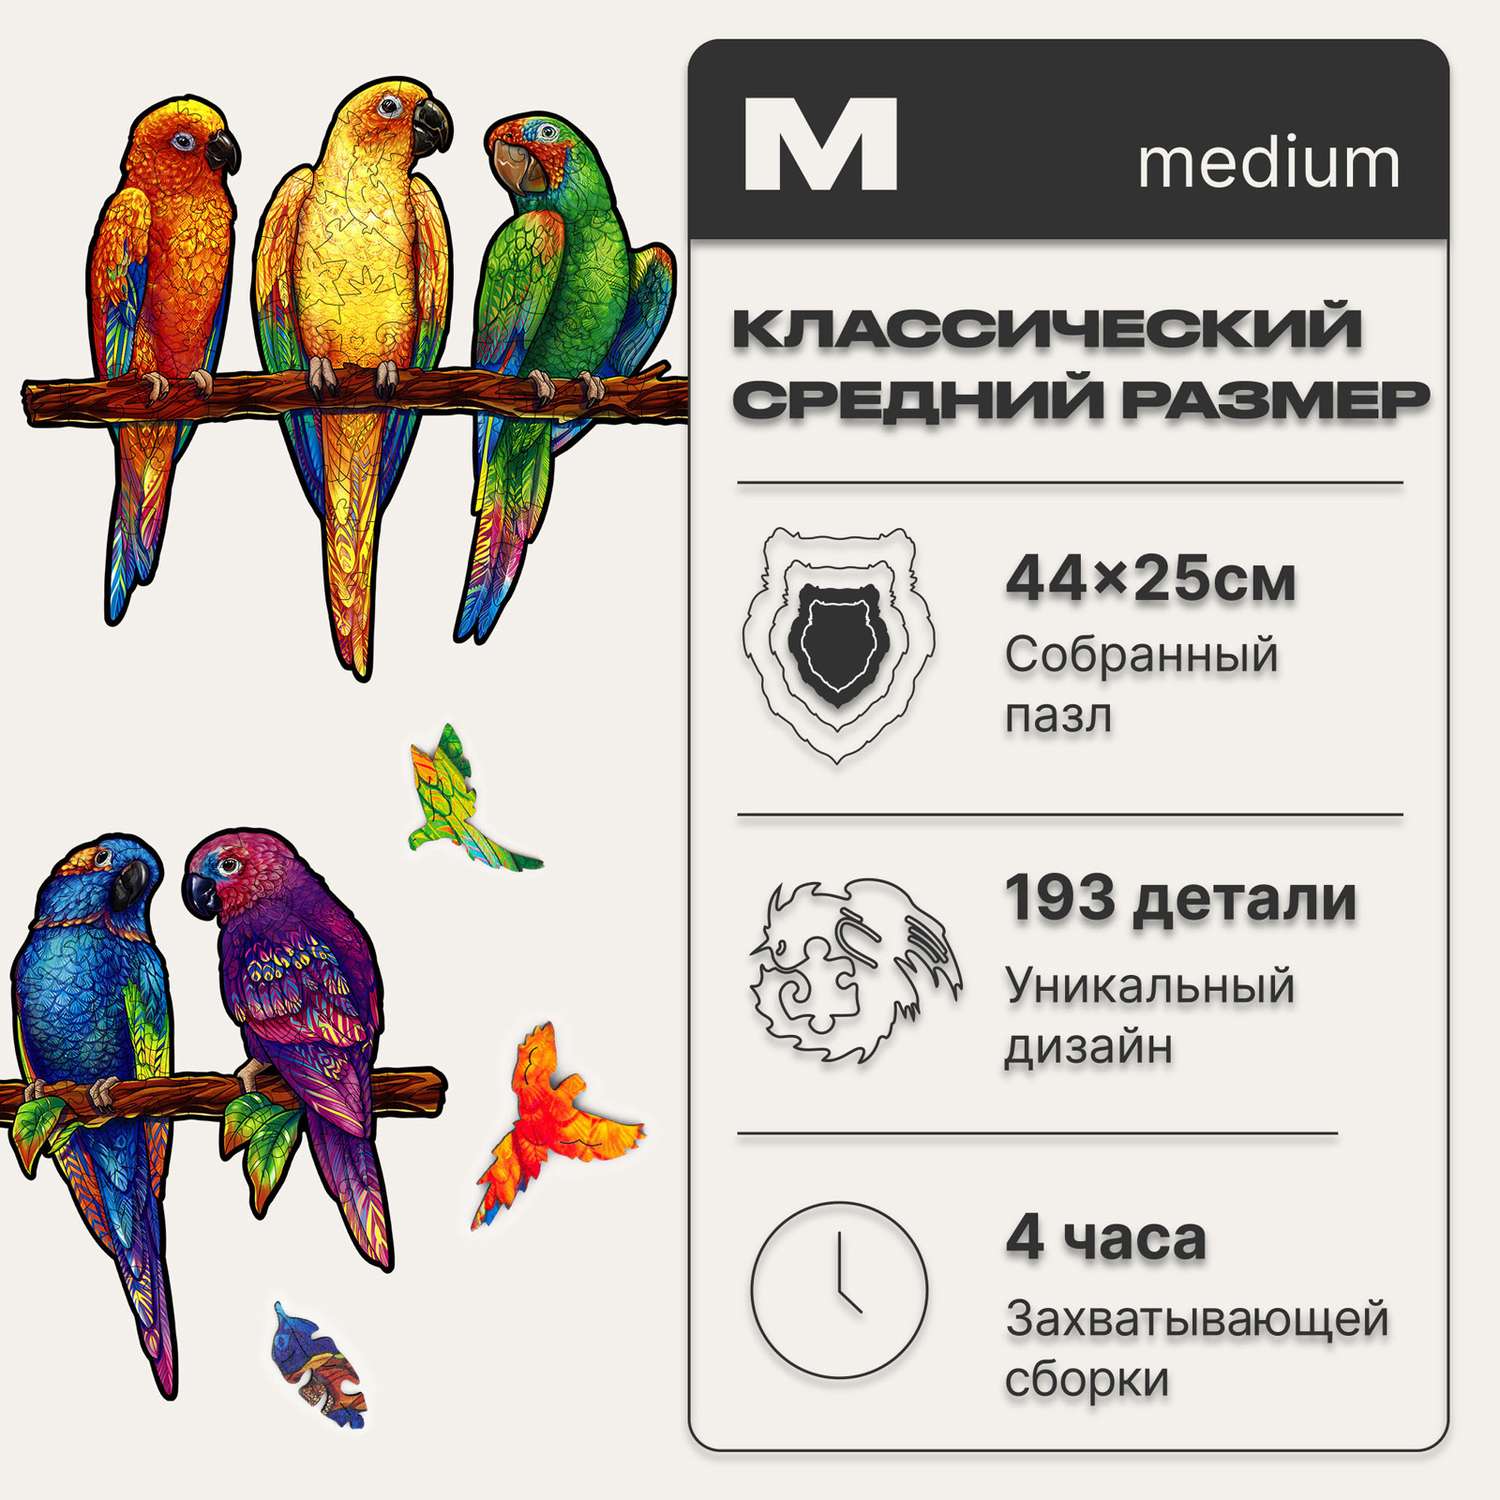 Пазл деревянный UNIDRAGON Игривые попугаи размер 44x25 см 193 детали - фото 2